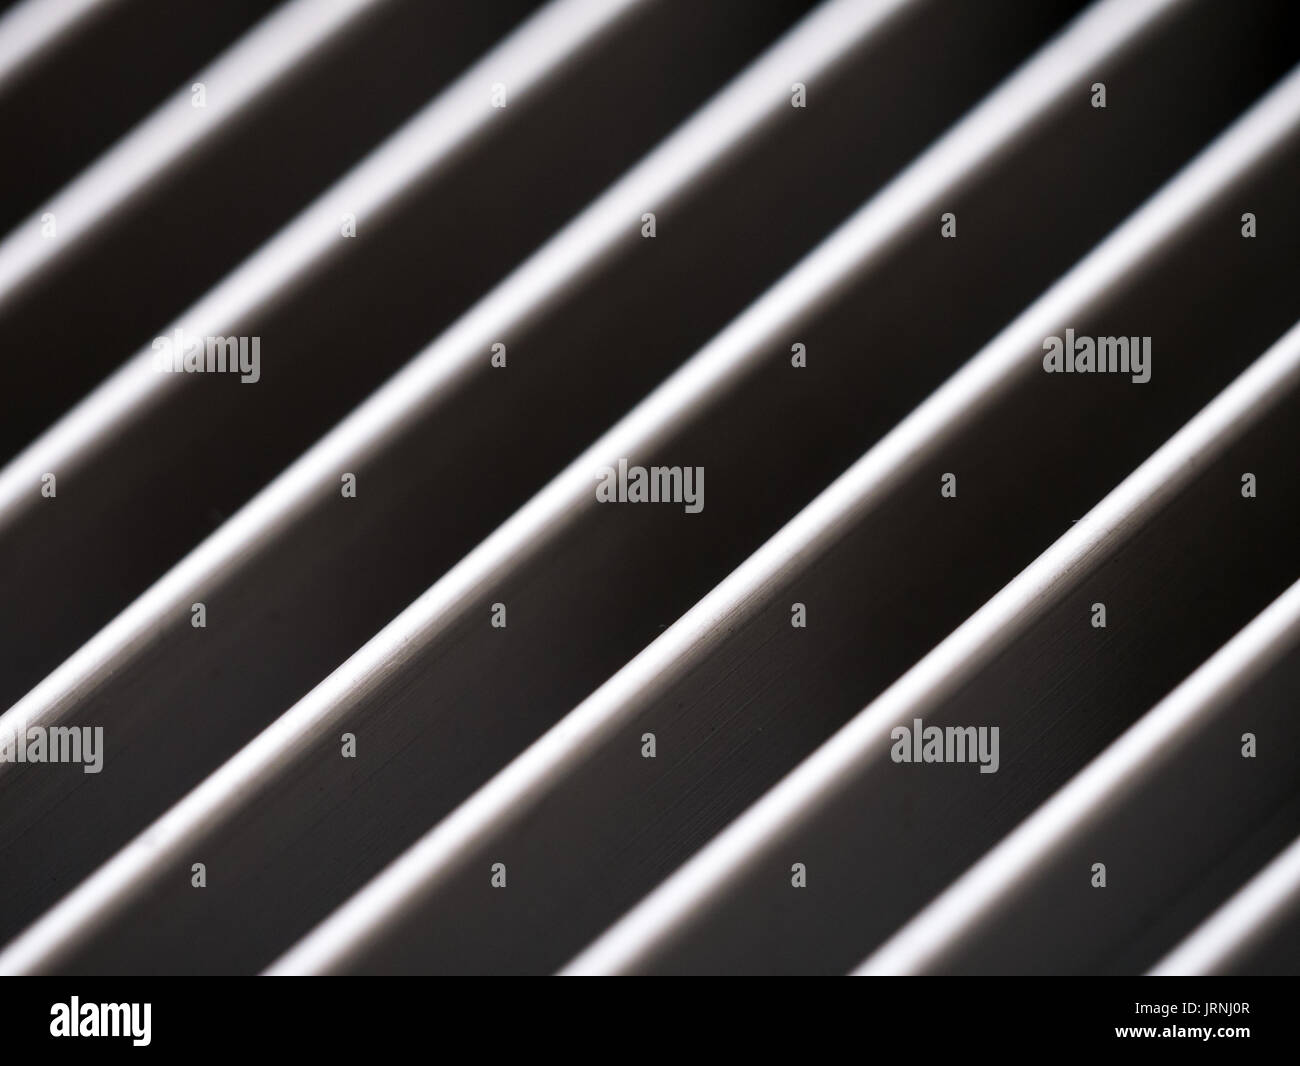 Close-up de couvercle en aluminium grille avec plan des lignes diagonales, ombre et lumière, noir et blanc Banque D'Images